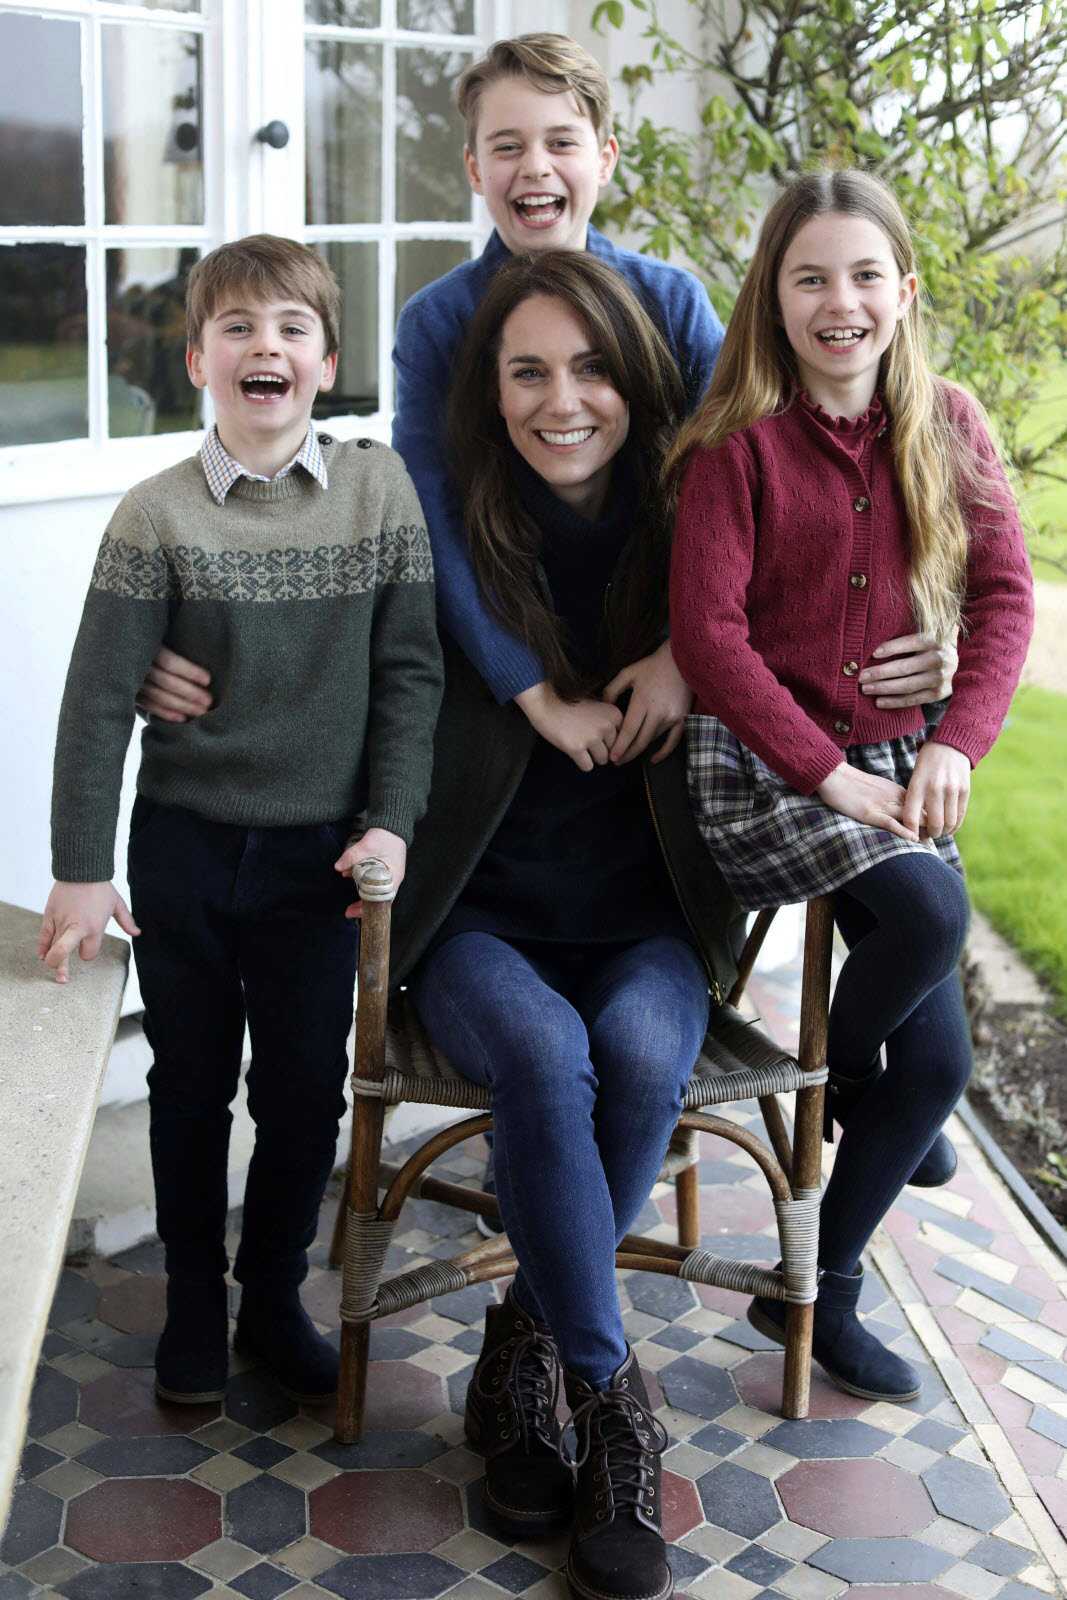 Kate Middleton et ses enfants